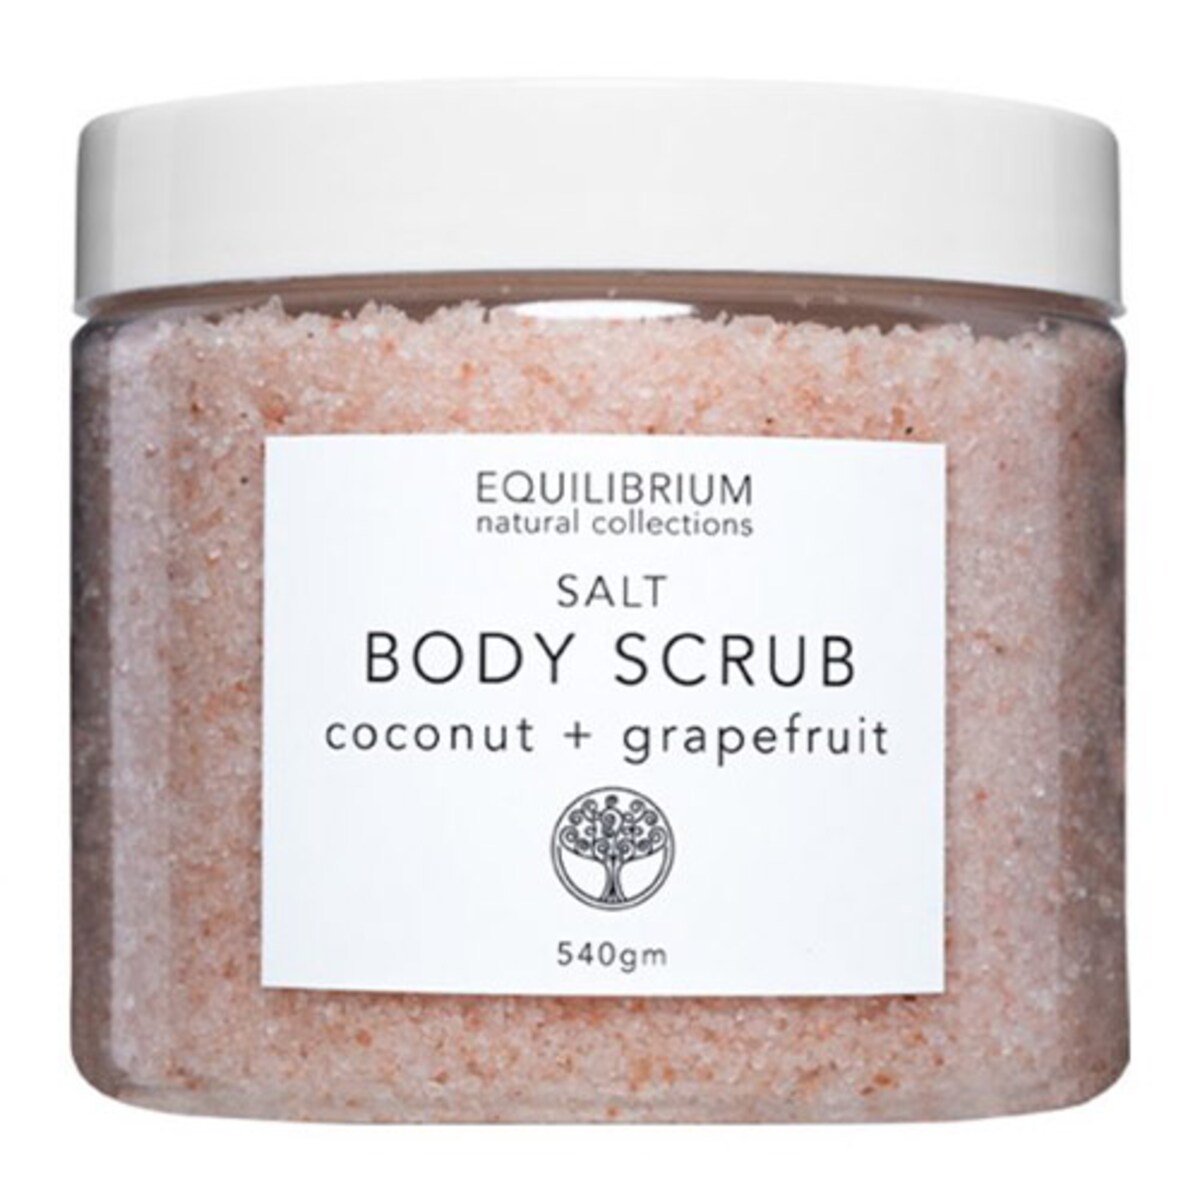 Equilibrium Salt Body Scrub Coconut & Grapefruit 540g